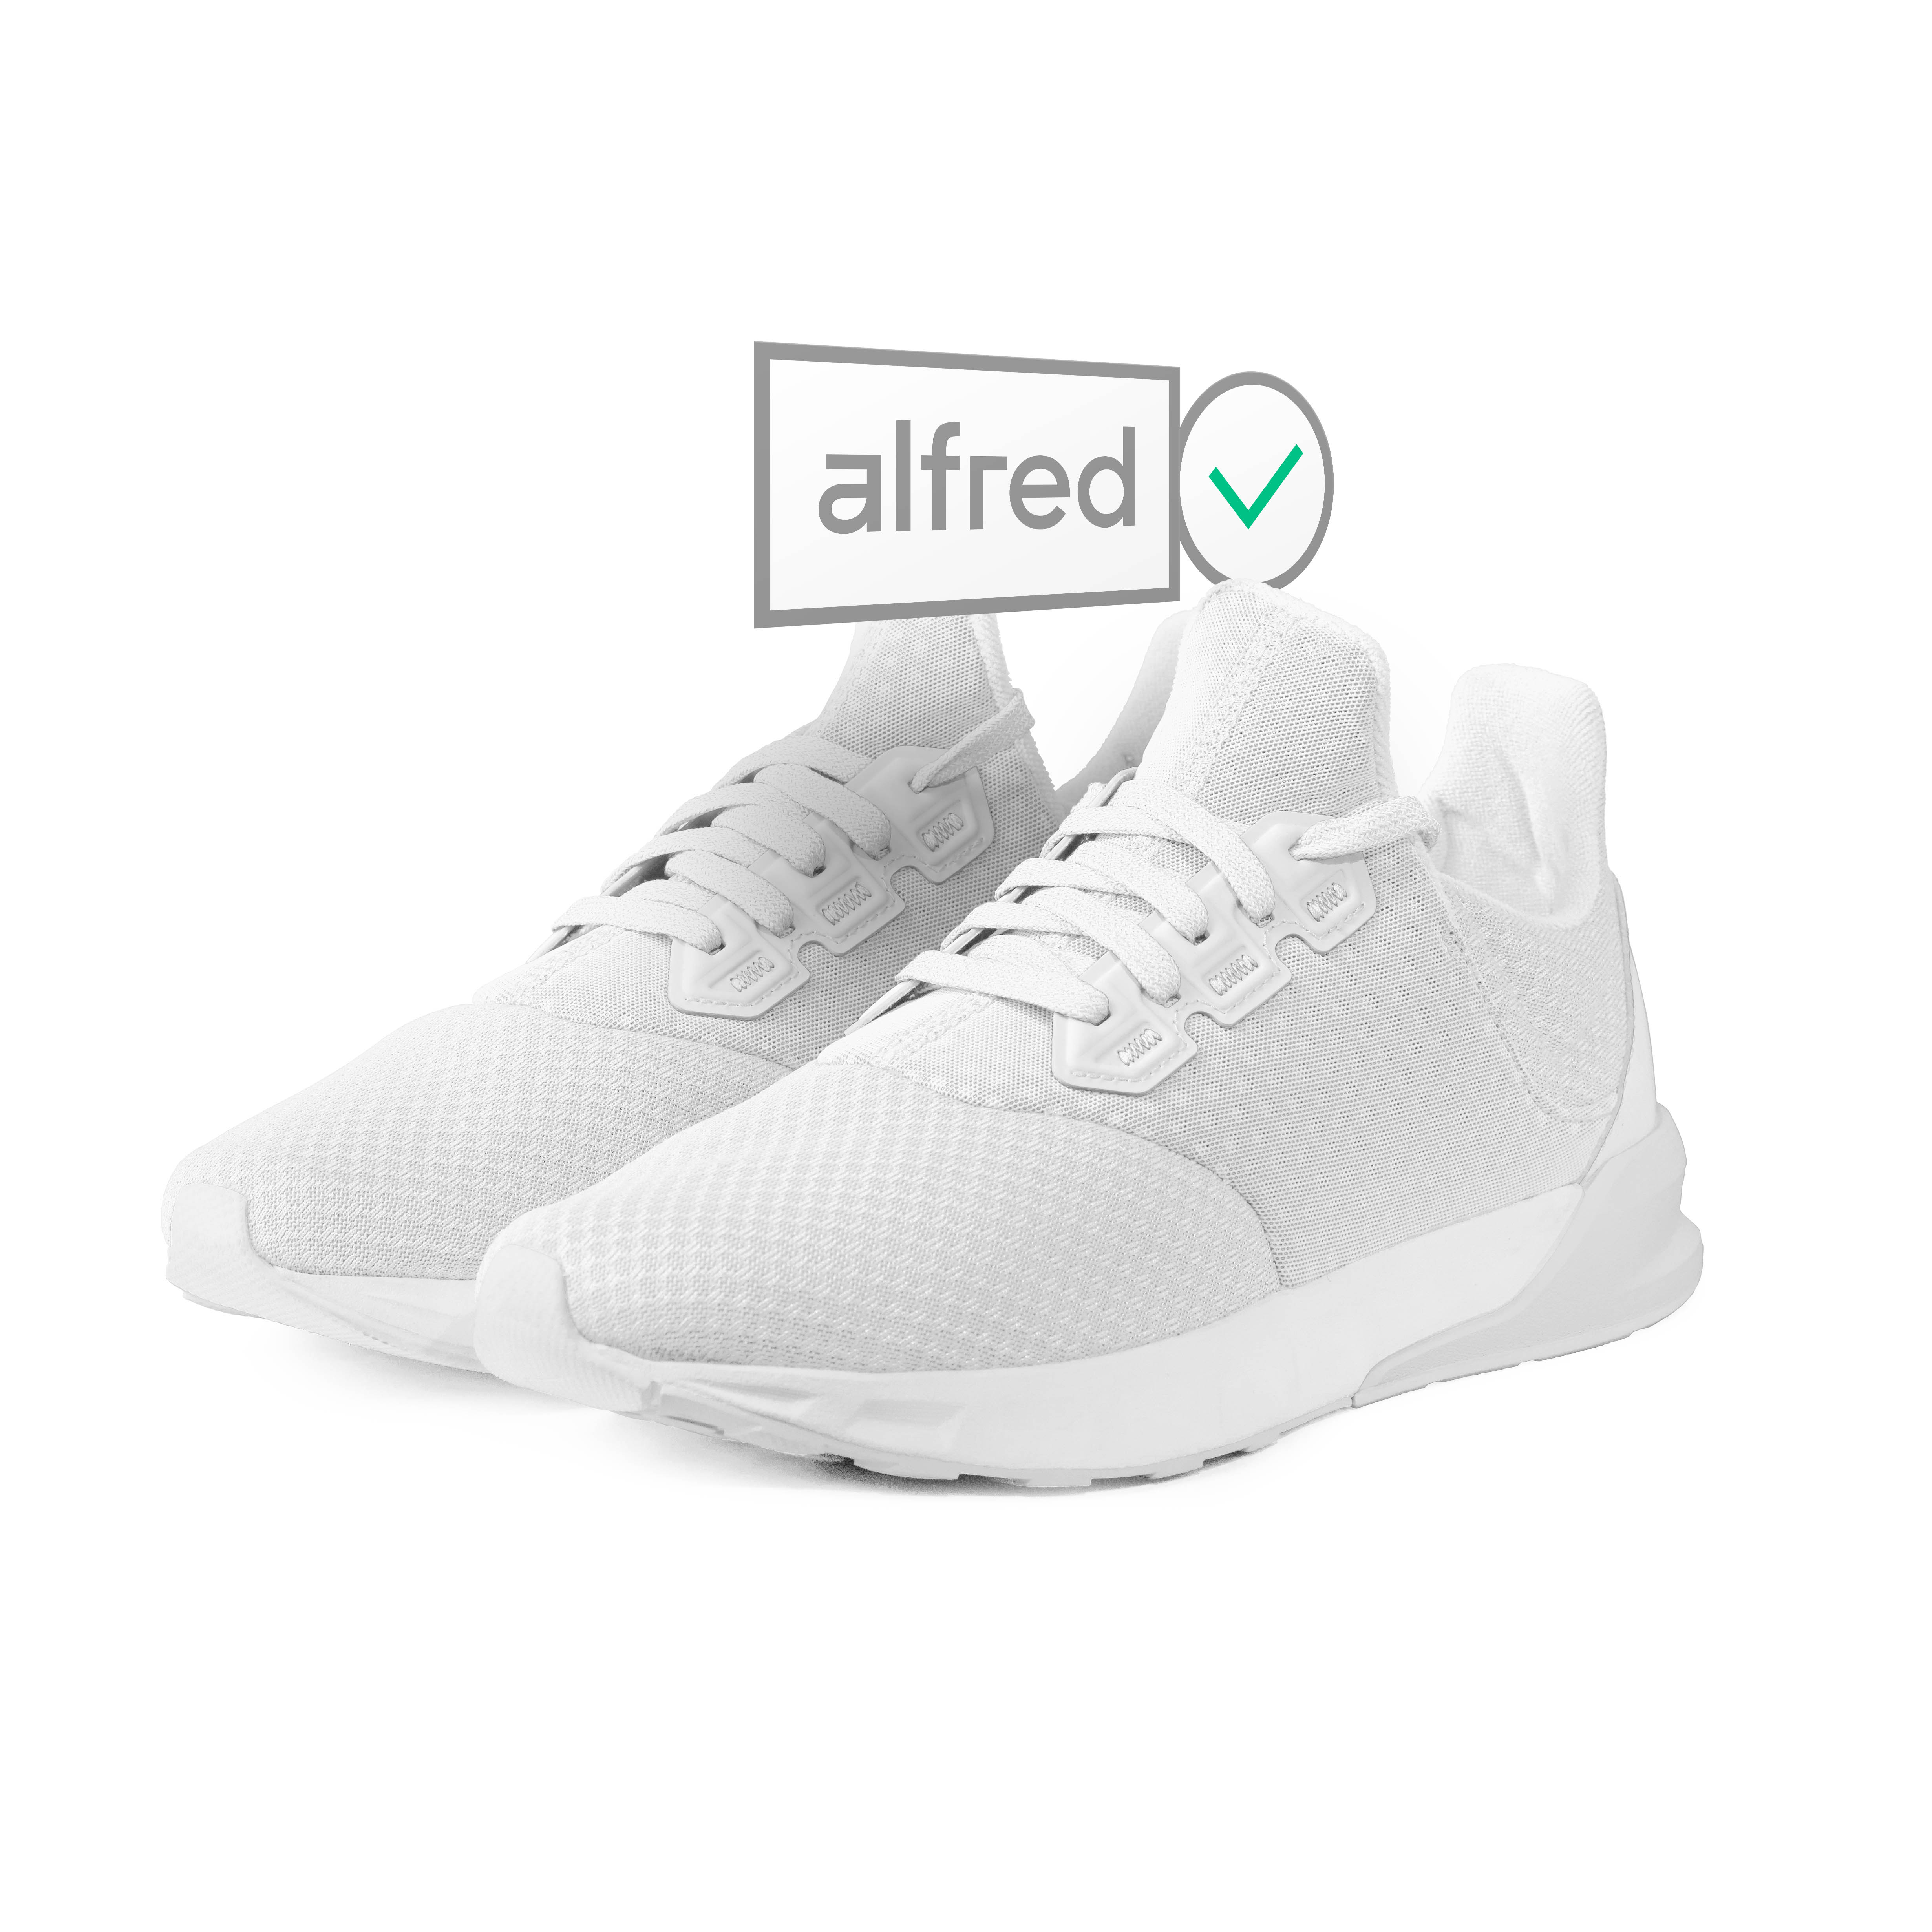 Alfred Premium